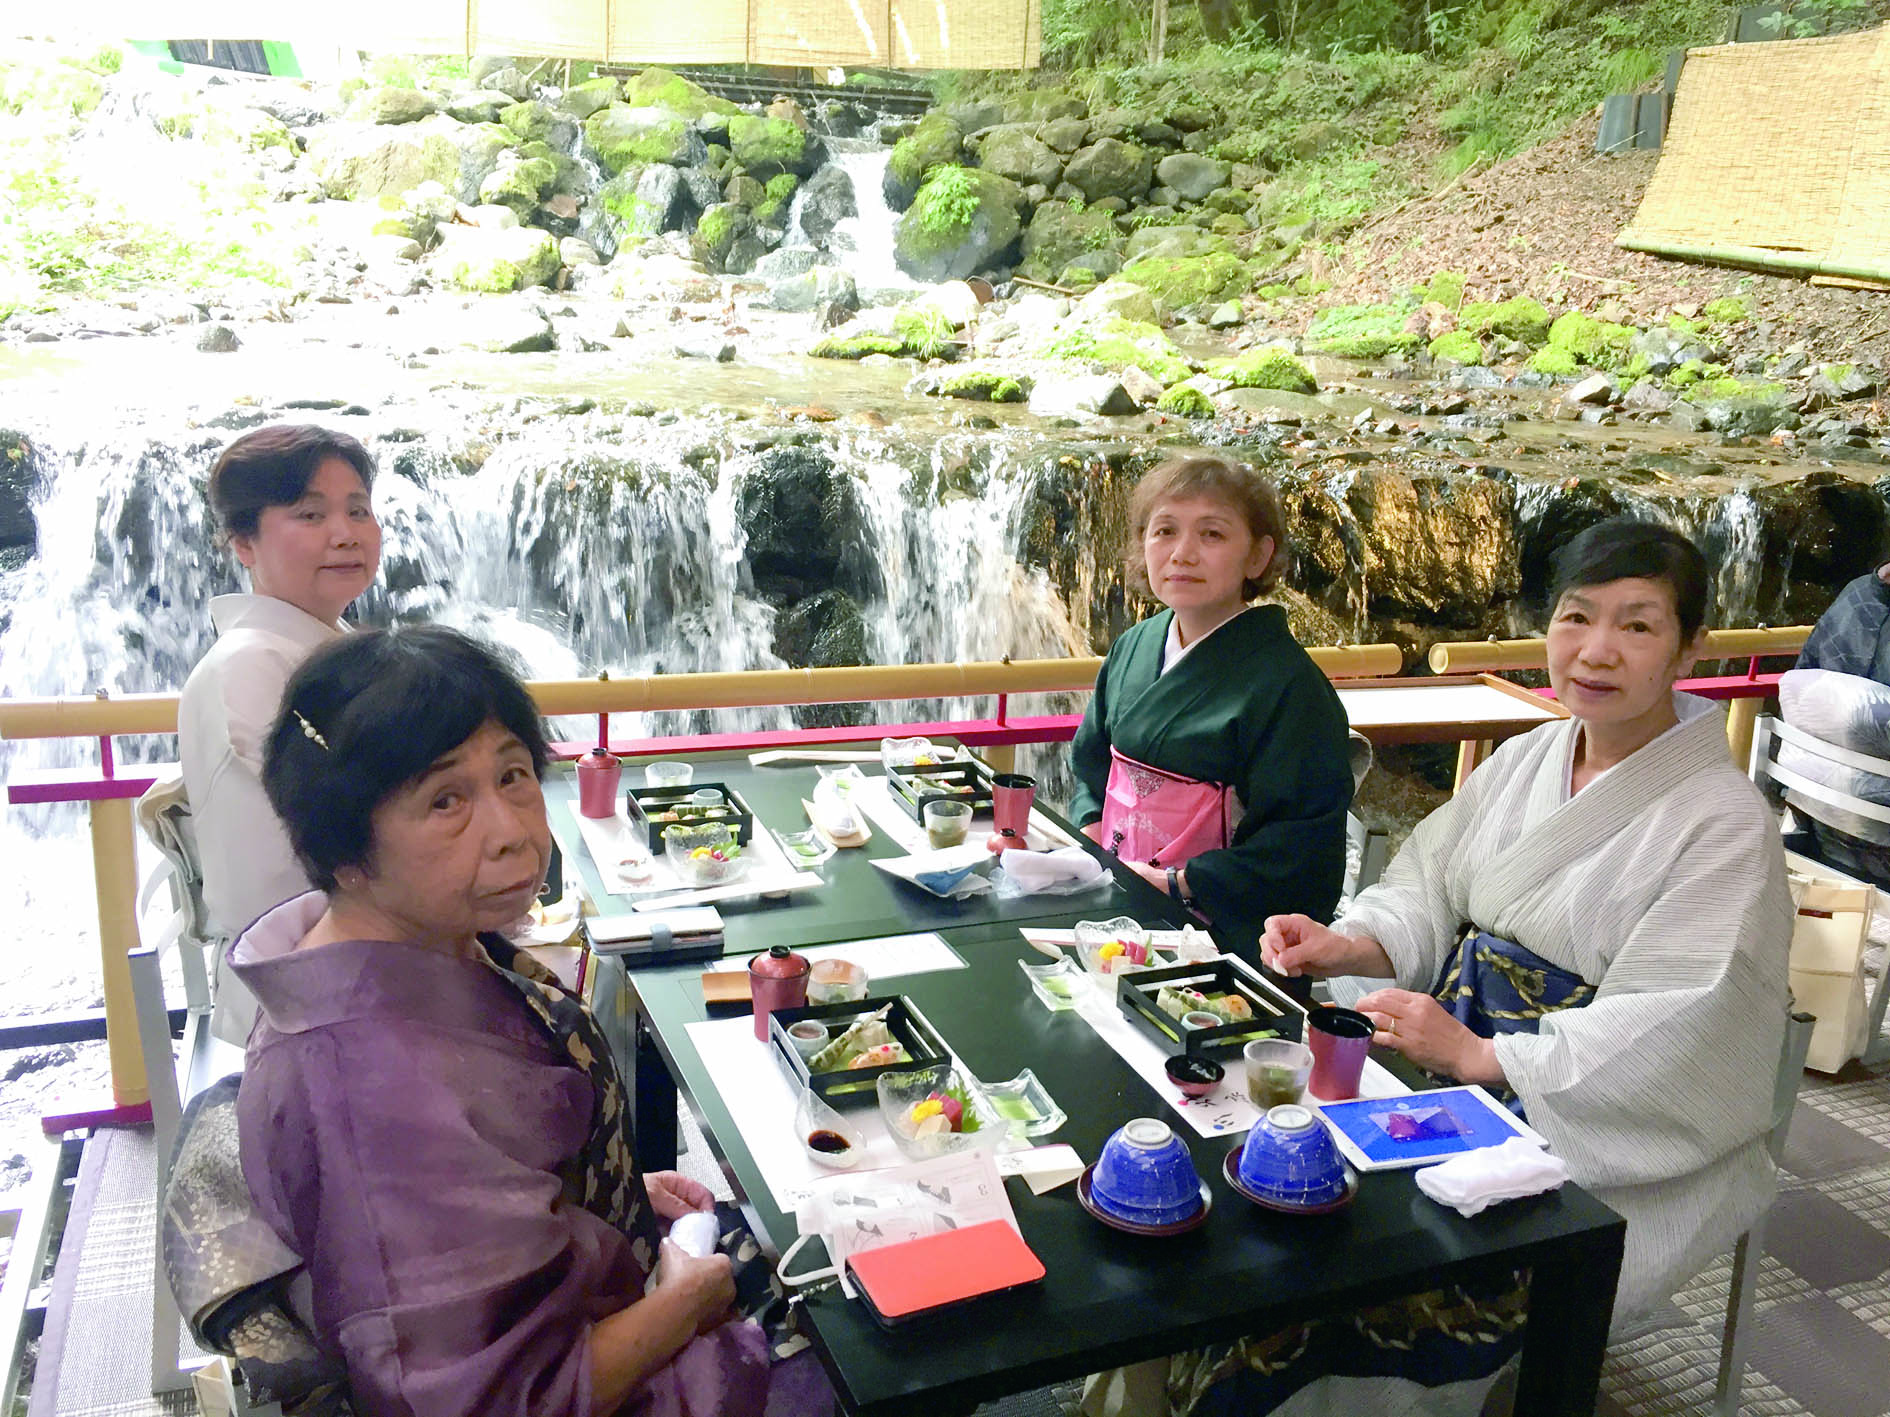 京都の奥座敷・貴船の川床で食事・四人テーブル